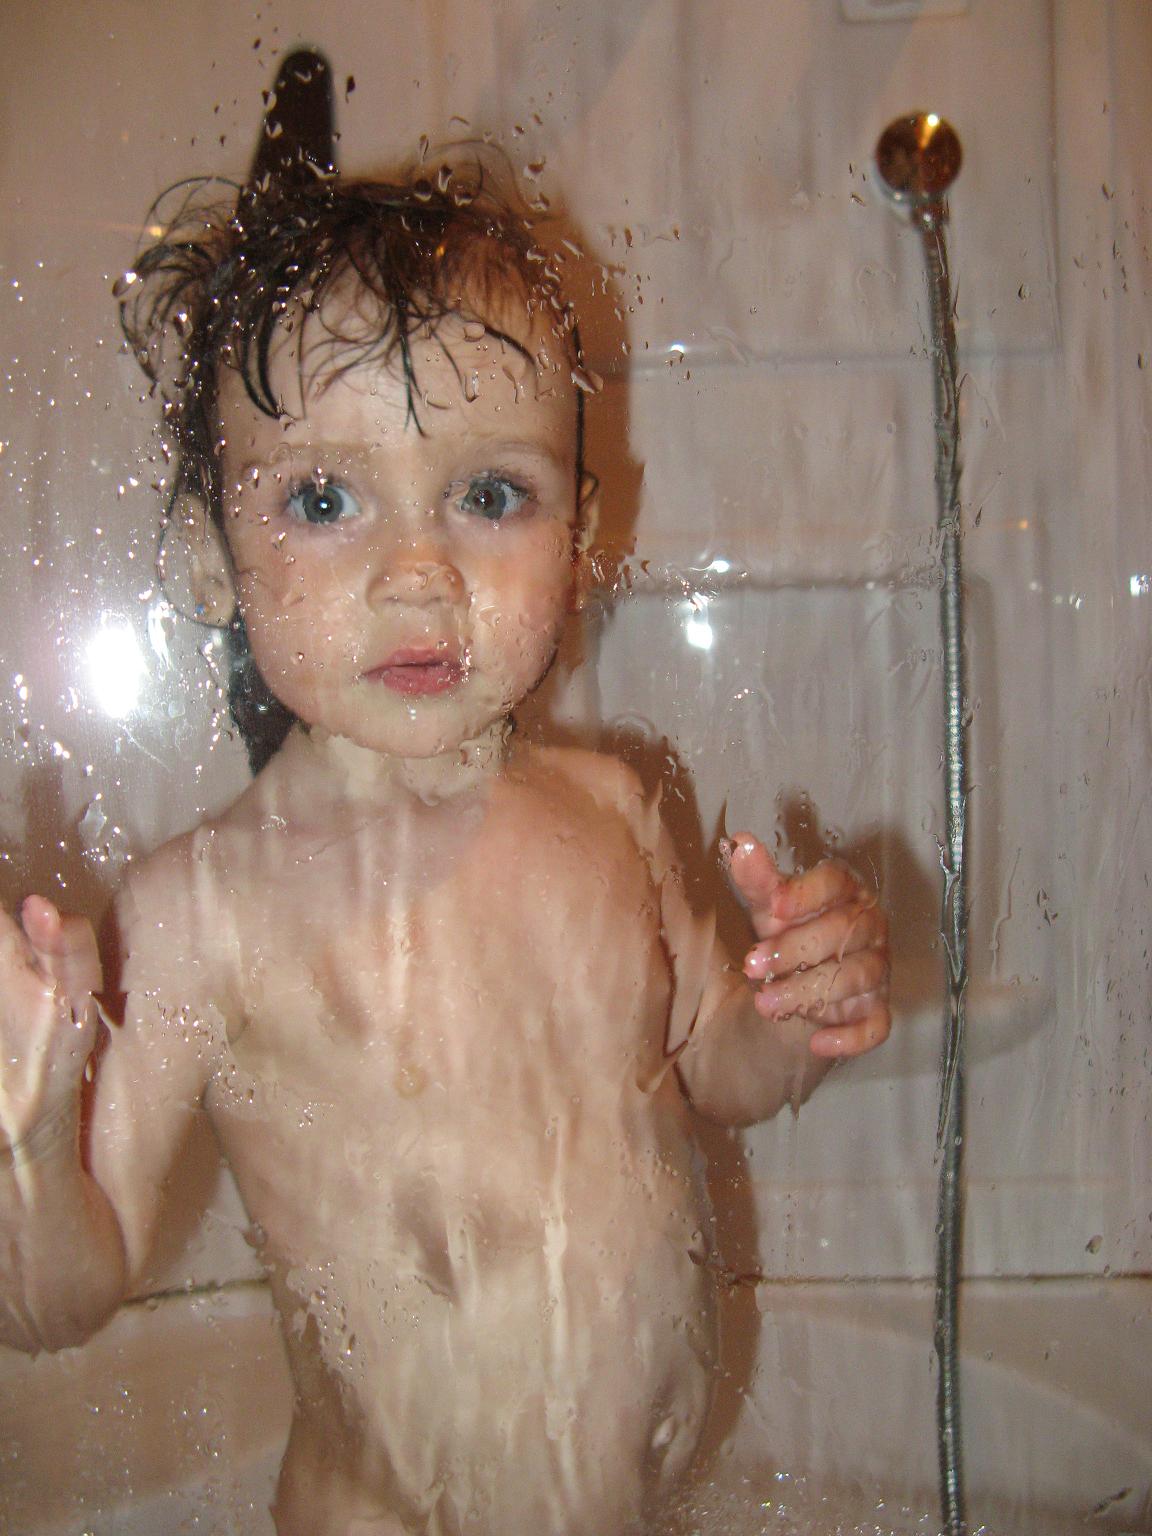 Дочка купается в ванной. Маенькиедевочки в душе. Девочка купается в ванне. Девочка купается в душе. Маленькие дети моются.